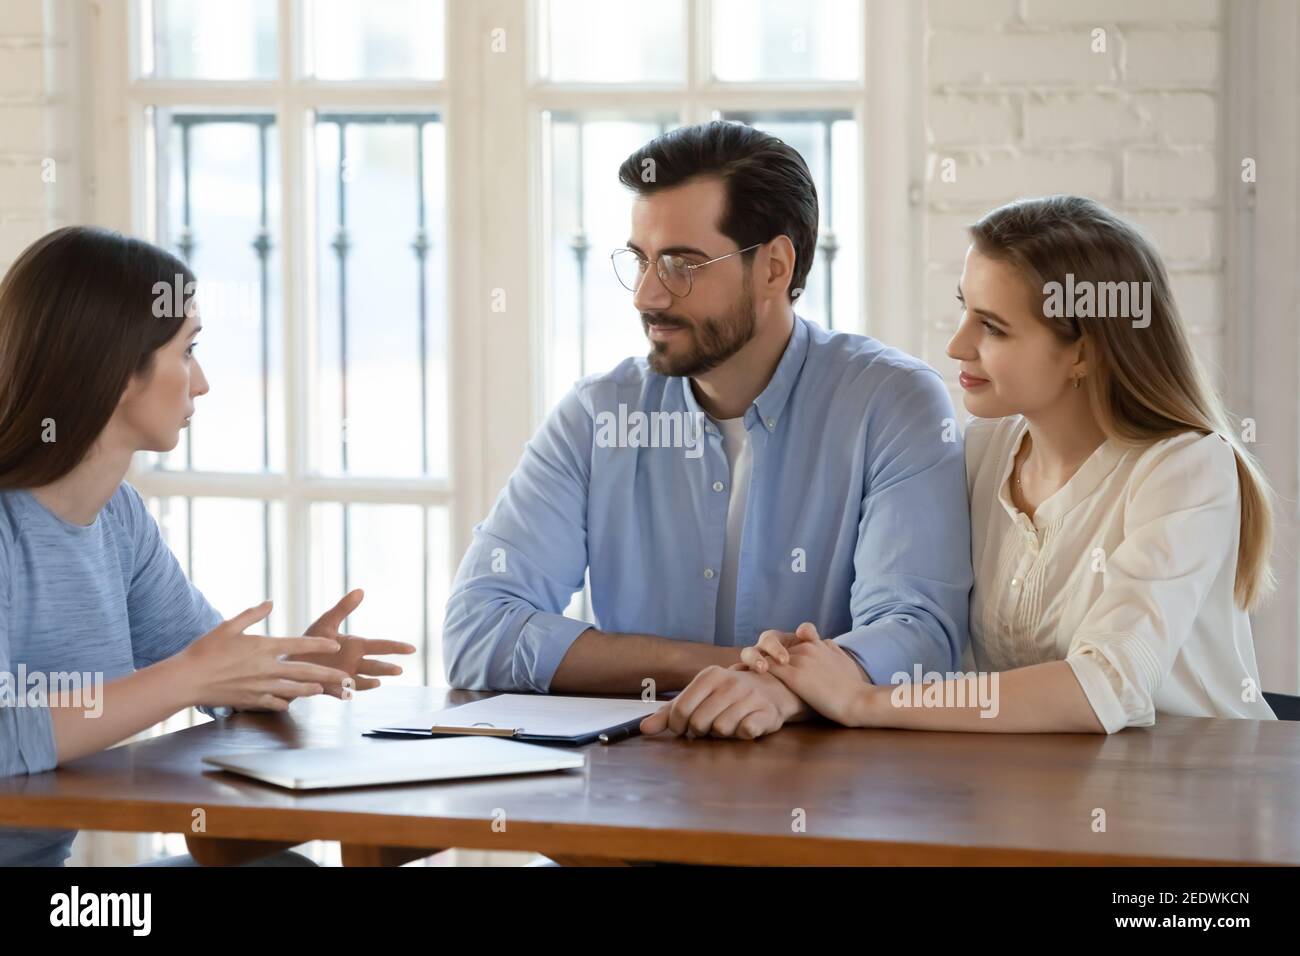 Feliz pareja joven de familia visitando a una mujer agente de bienes raíces. Foto de stock